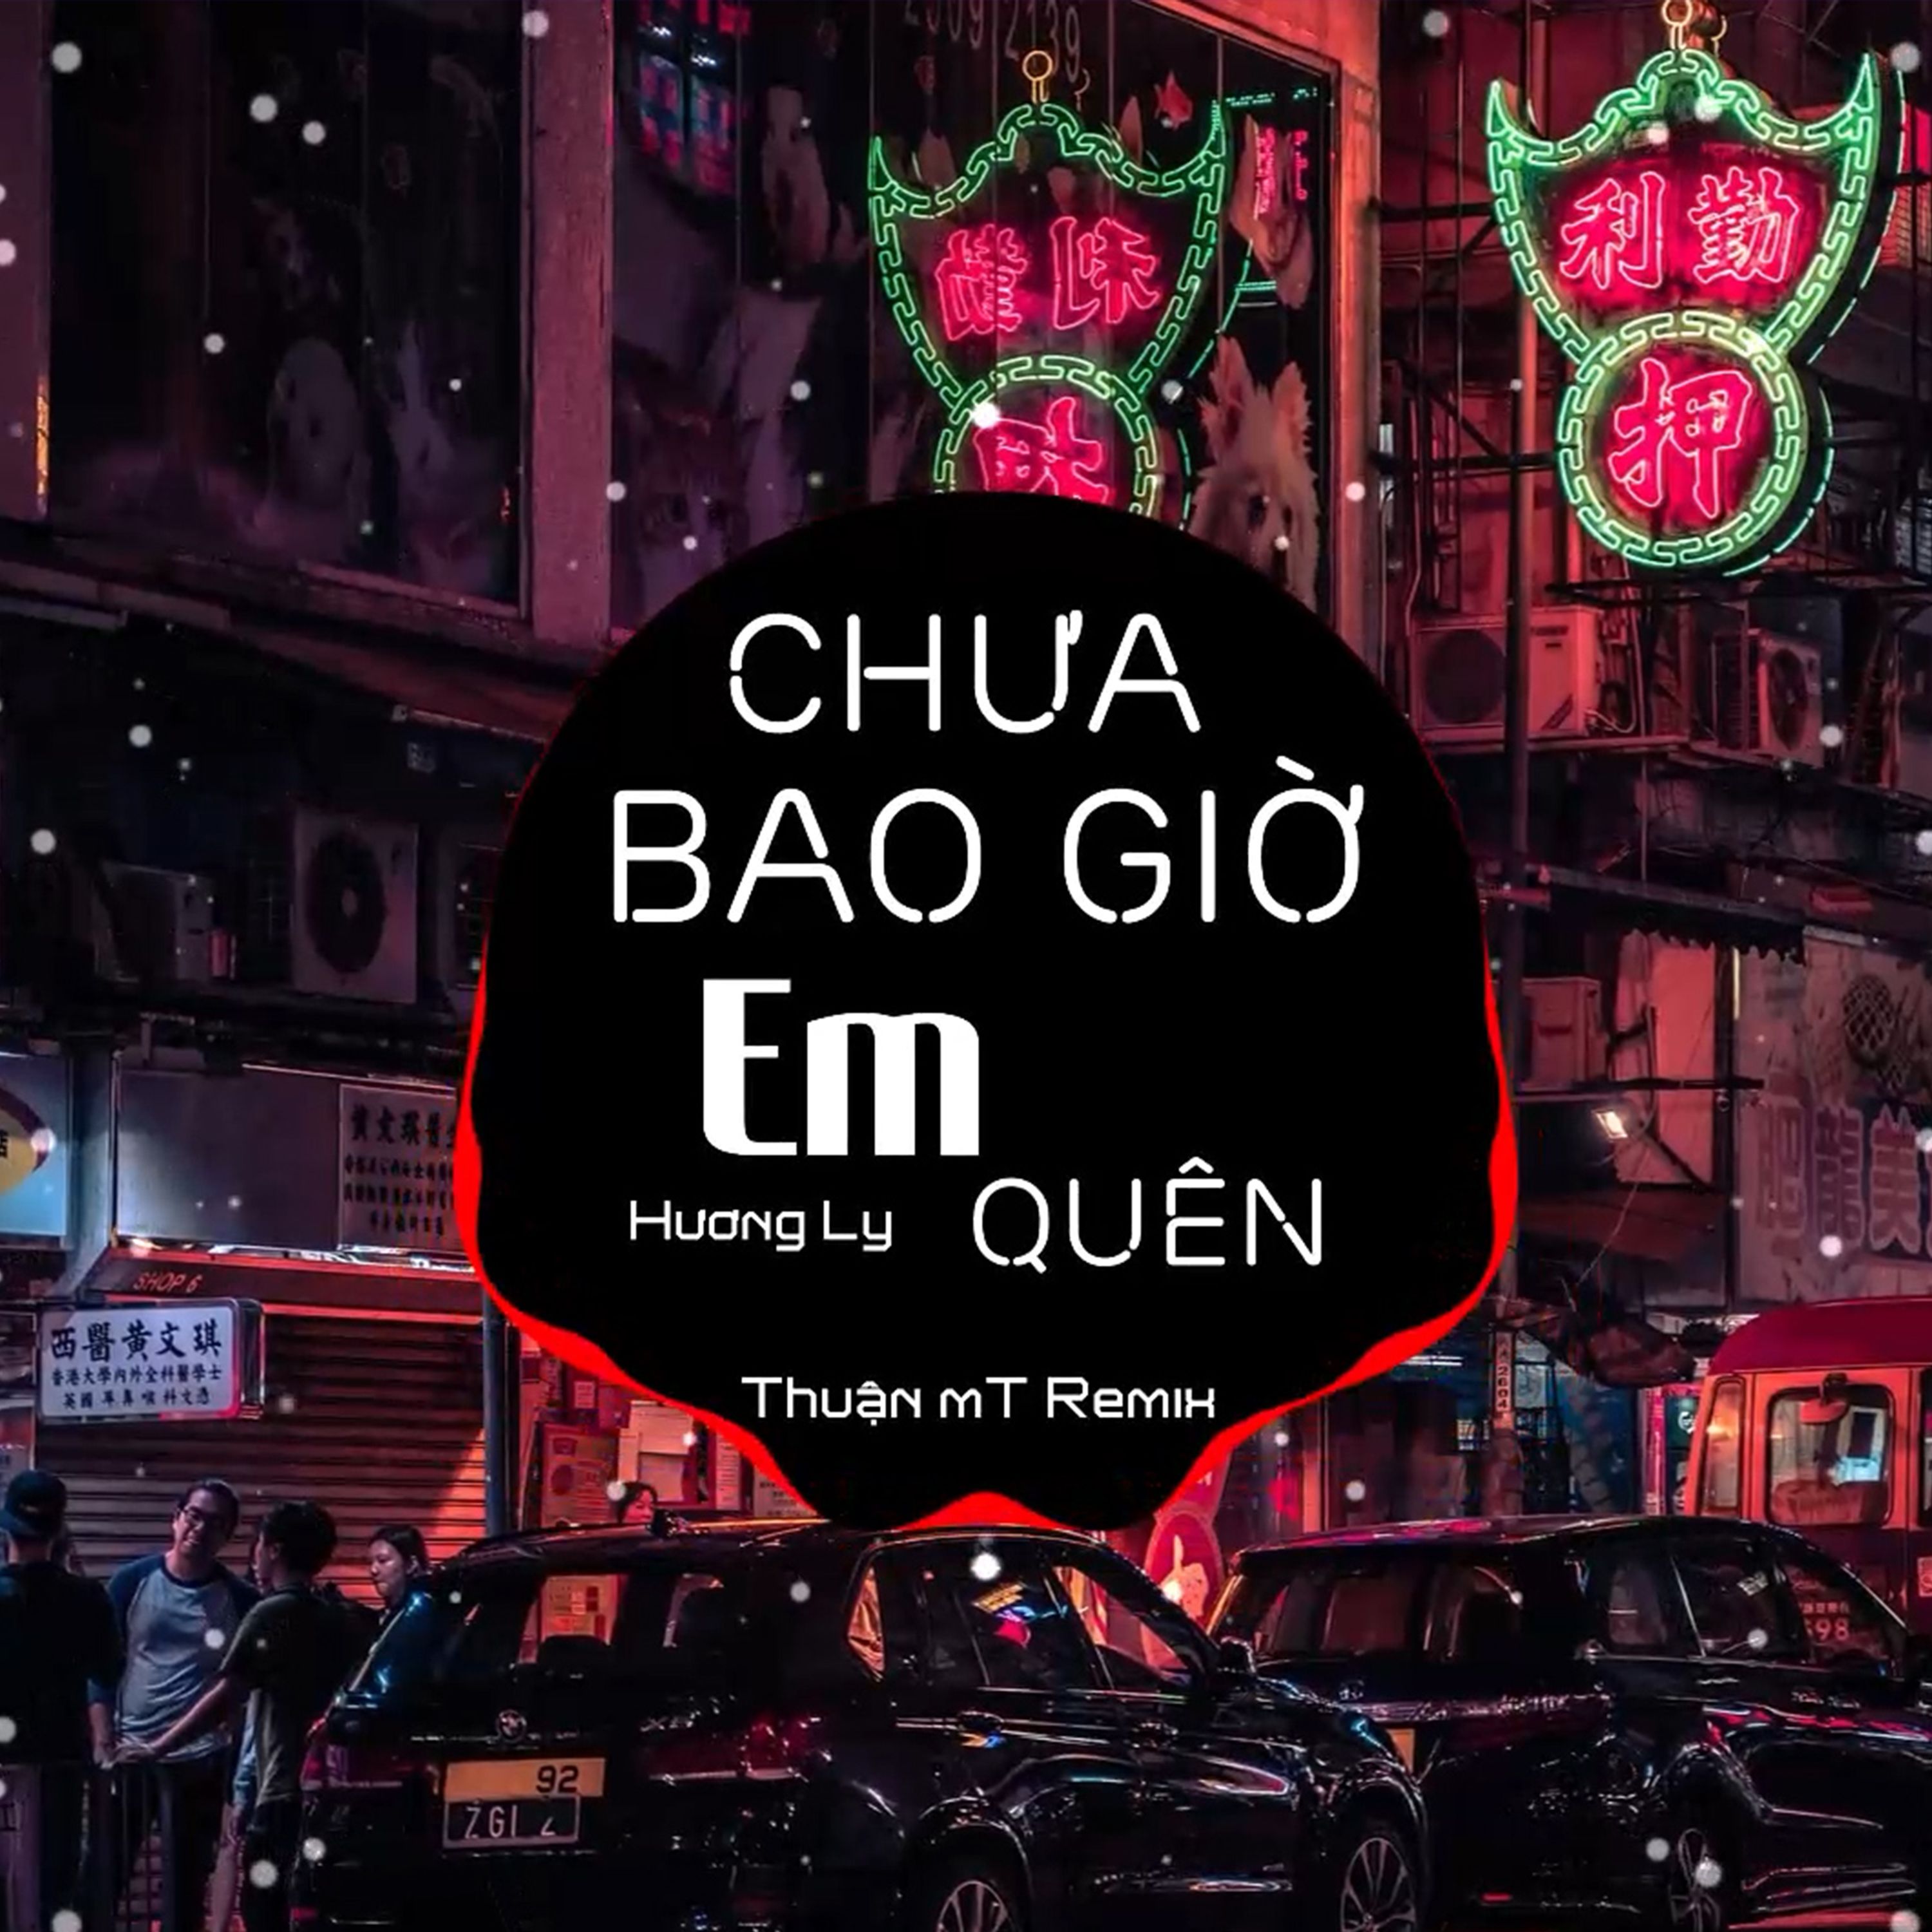 බාගත Chưa Bao Giờ Em Quên ( Thuận mT Remix ) Ver 2 - Hương Ly | Nhạc Nền Chill Phiêu Nhất TikTok  2021